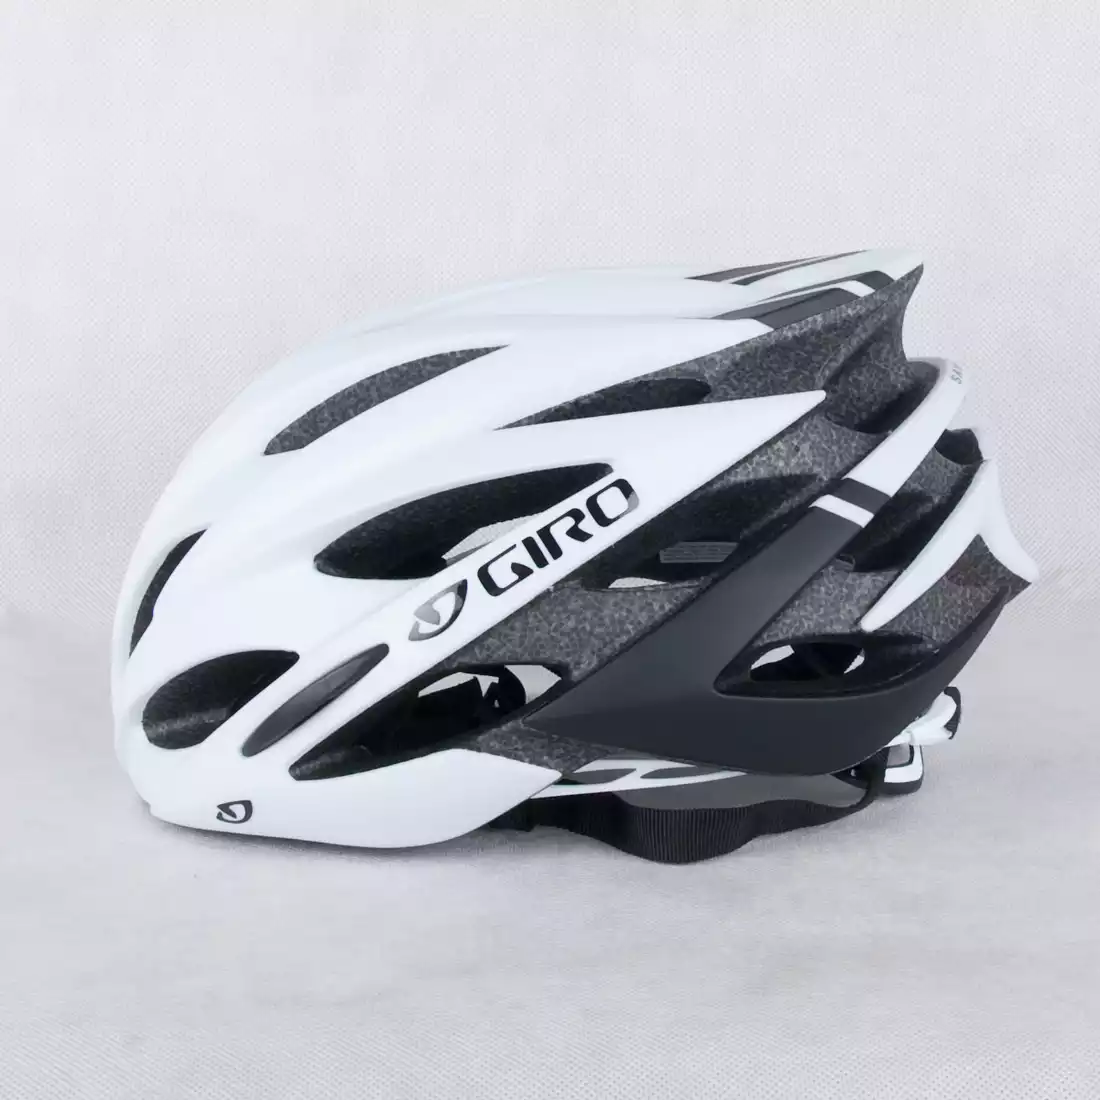 GIRO SAVANT - kask rowerowy biało-czarny mat